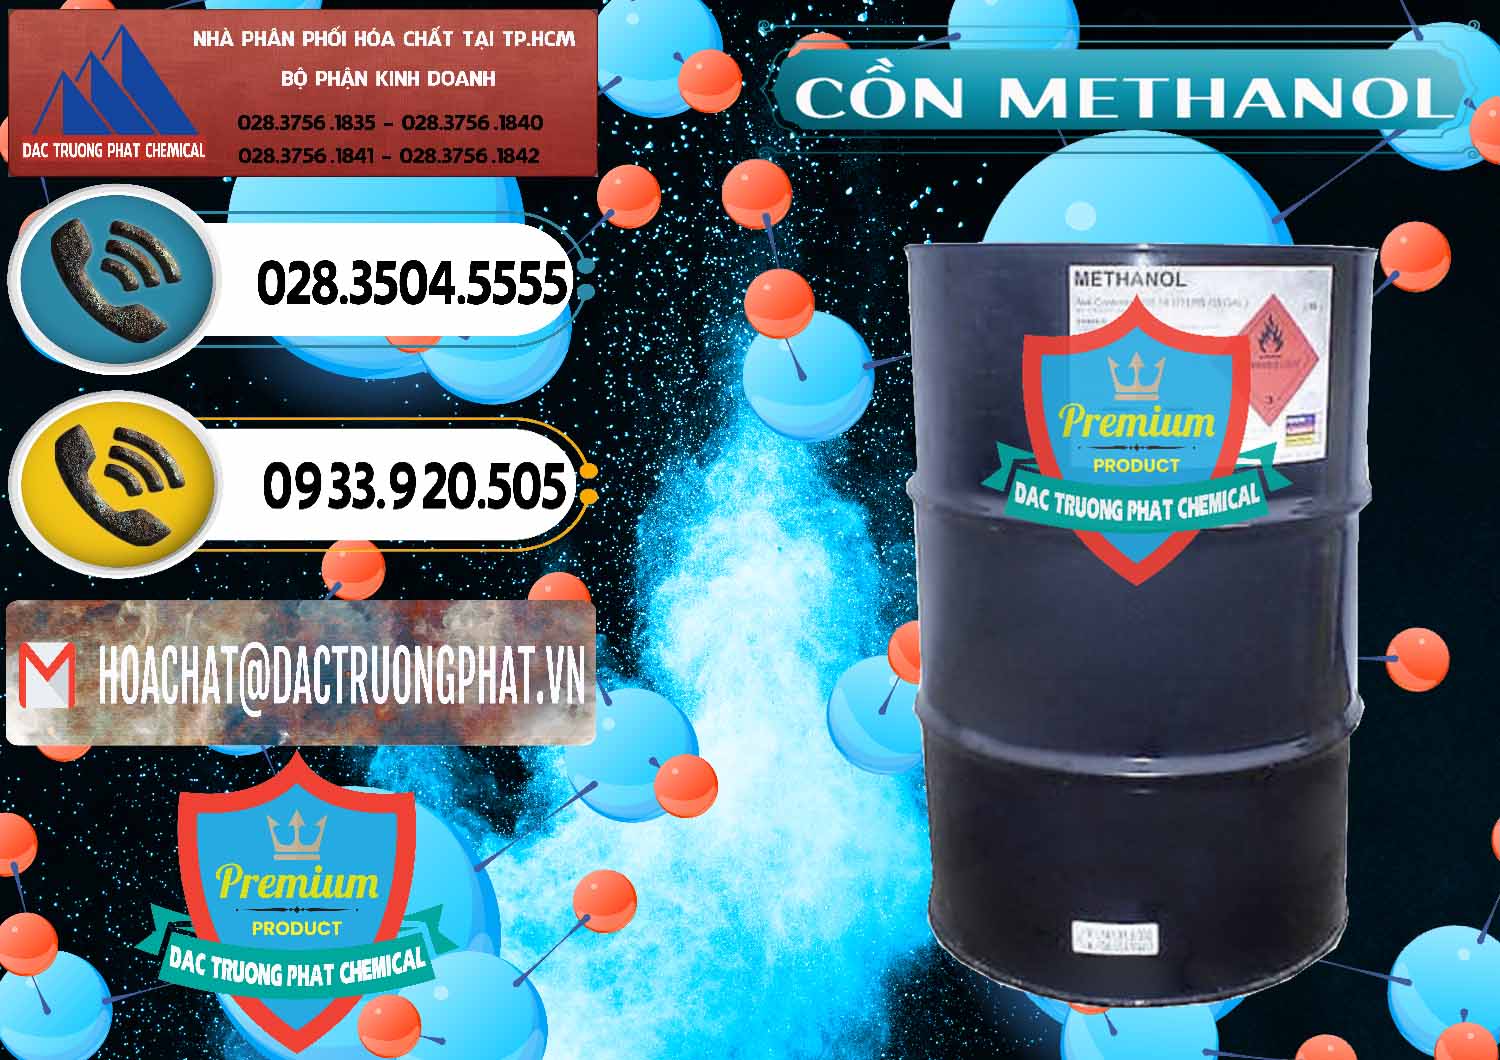 Chuyên bán - cung ứng Cồn Methanol - Methyl Alcohol Mã Lai Malaysia - 0331 - Nơi chuyên kinh doanh ( cung cấp ) hóa chất tại TP.HCM - hoachatdetnhuom.vn